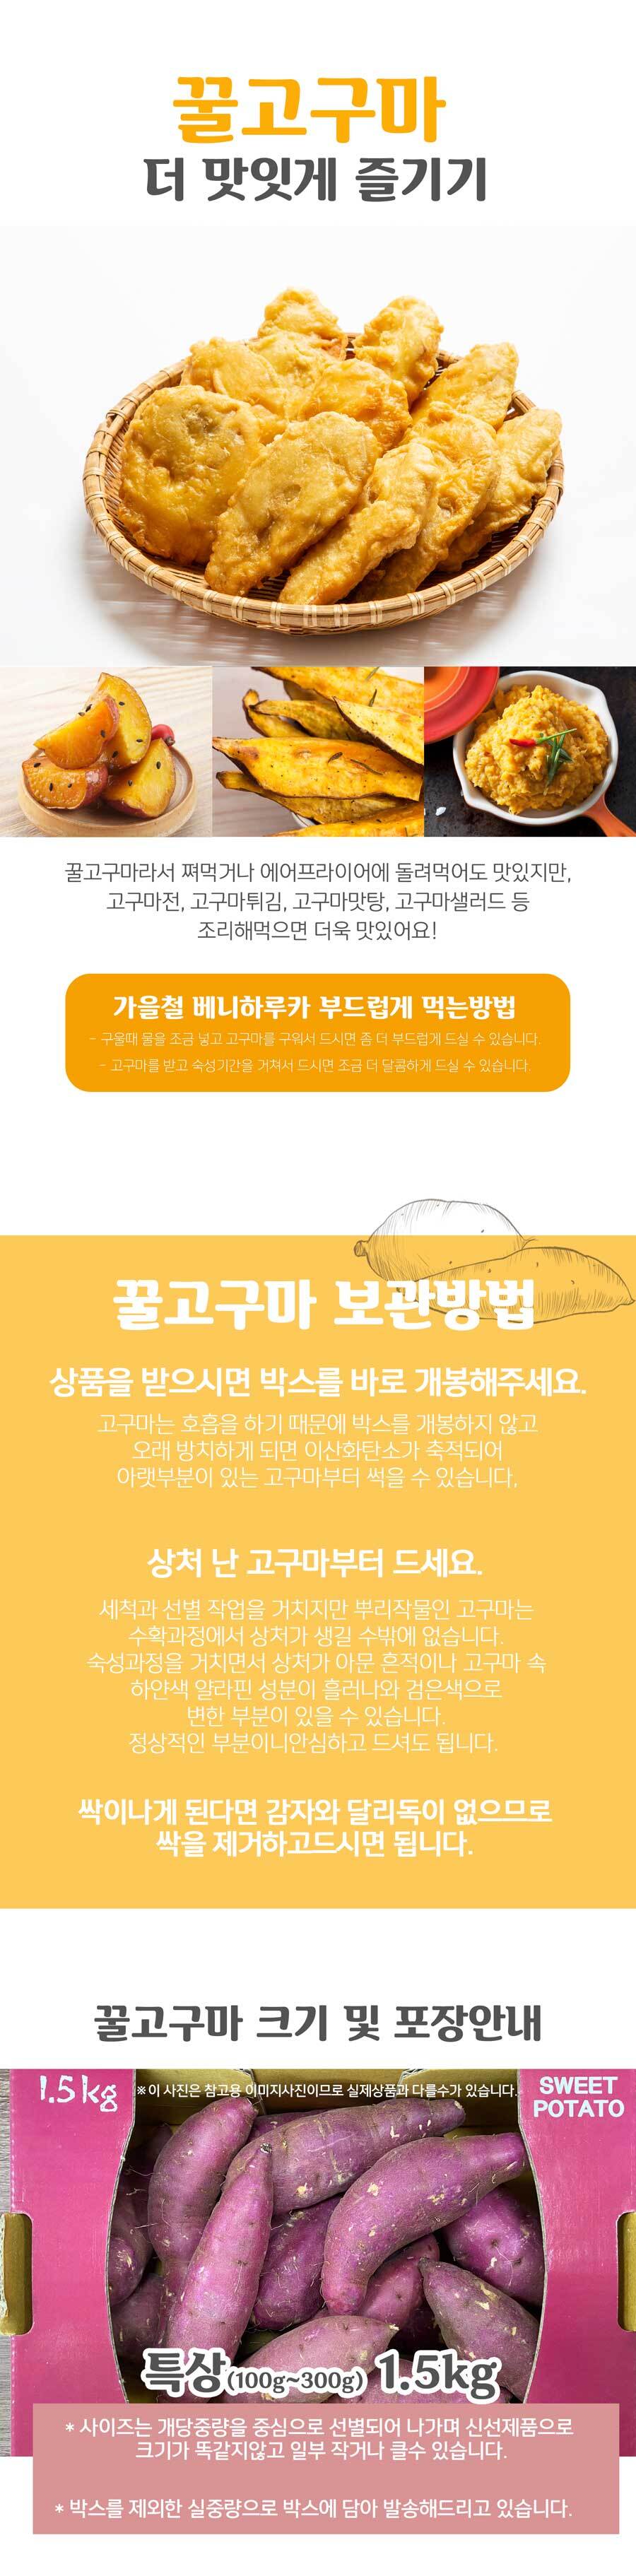 김제용지농협] 햇고구마 베니하루카 (세척고구마) - 오아시스마켓::믿을 수 있는 먹거리